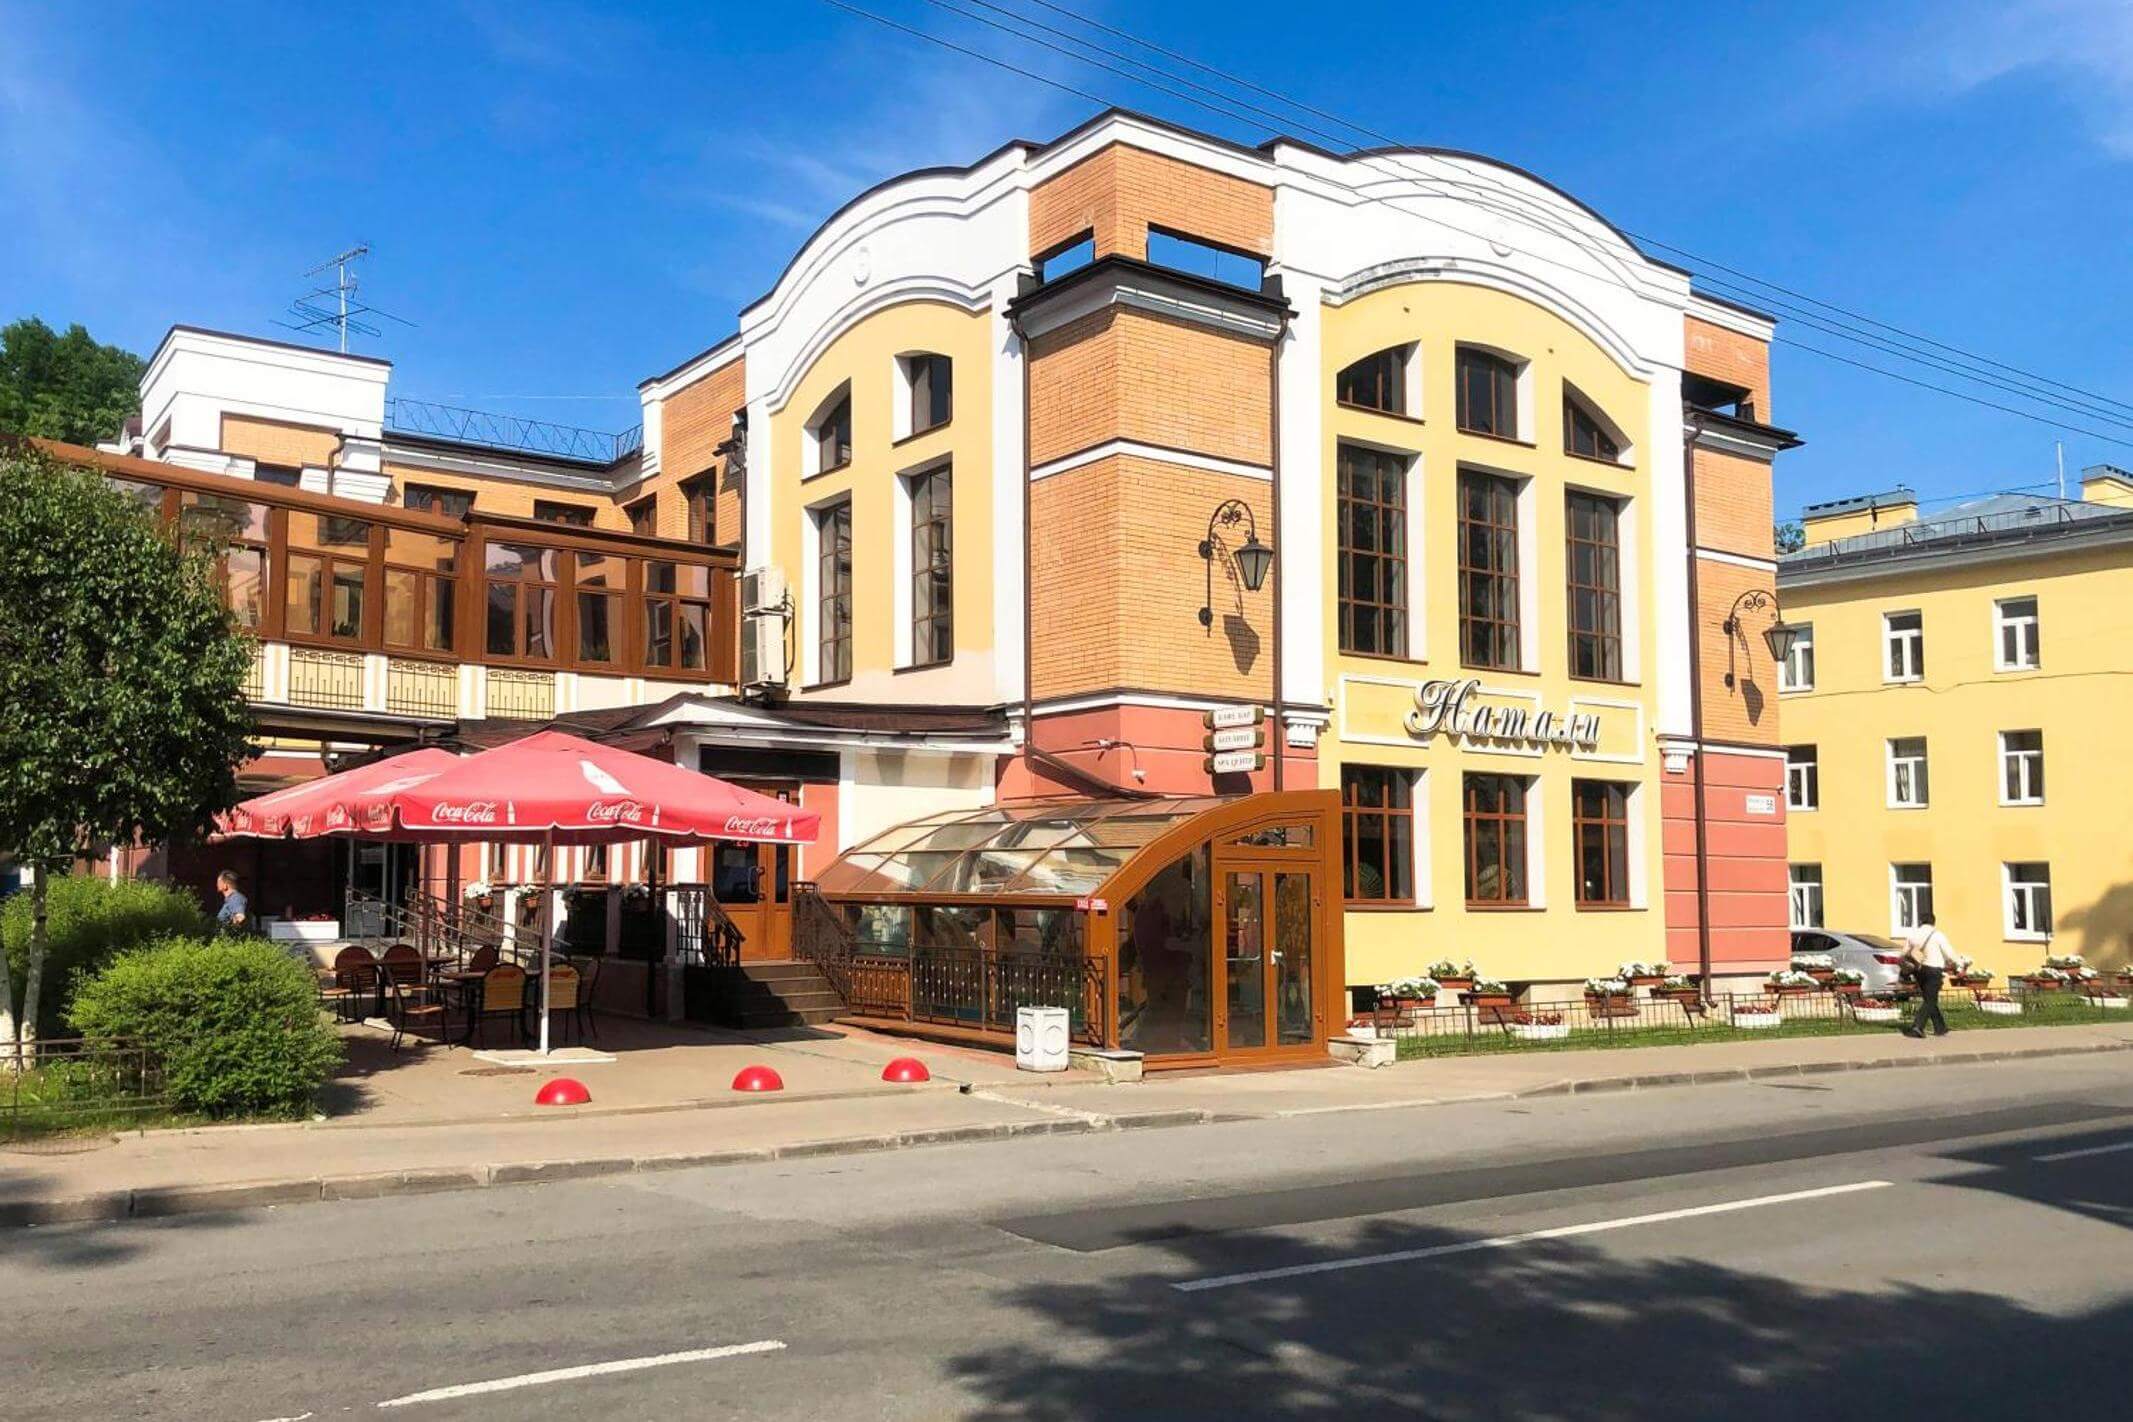 Фасад здания и летний ресторан, вид со стороны улицы.